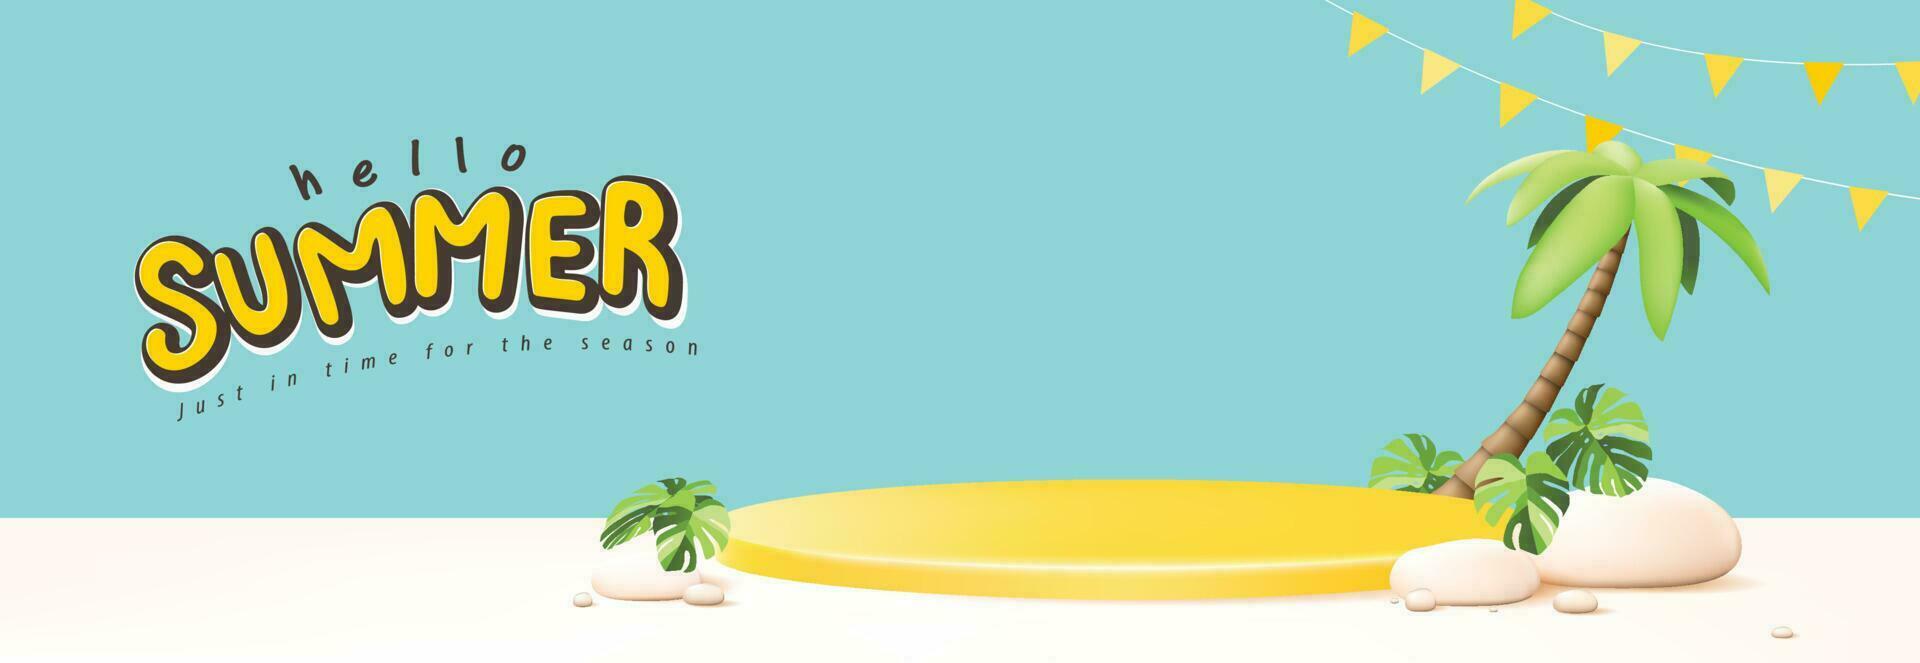 zomer reizen poster banier met geel Product Scherm podium zomer tropisch strand tafereel achtergrond vector